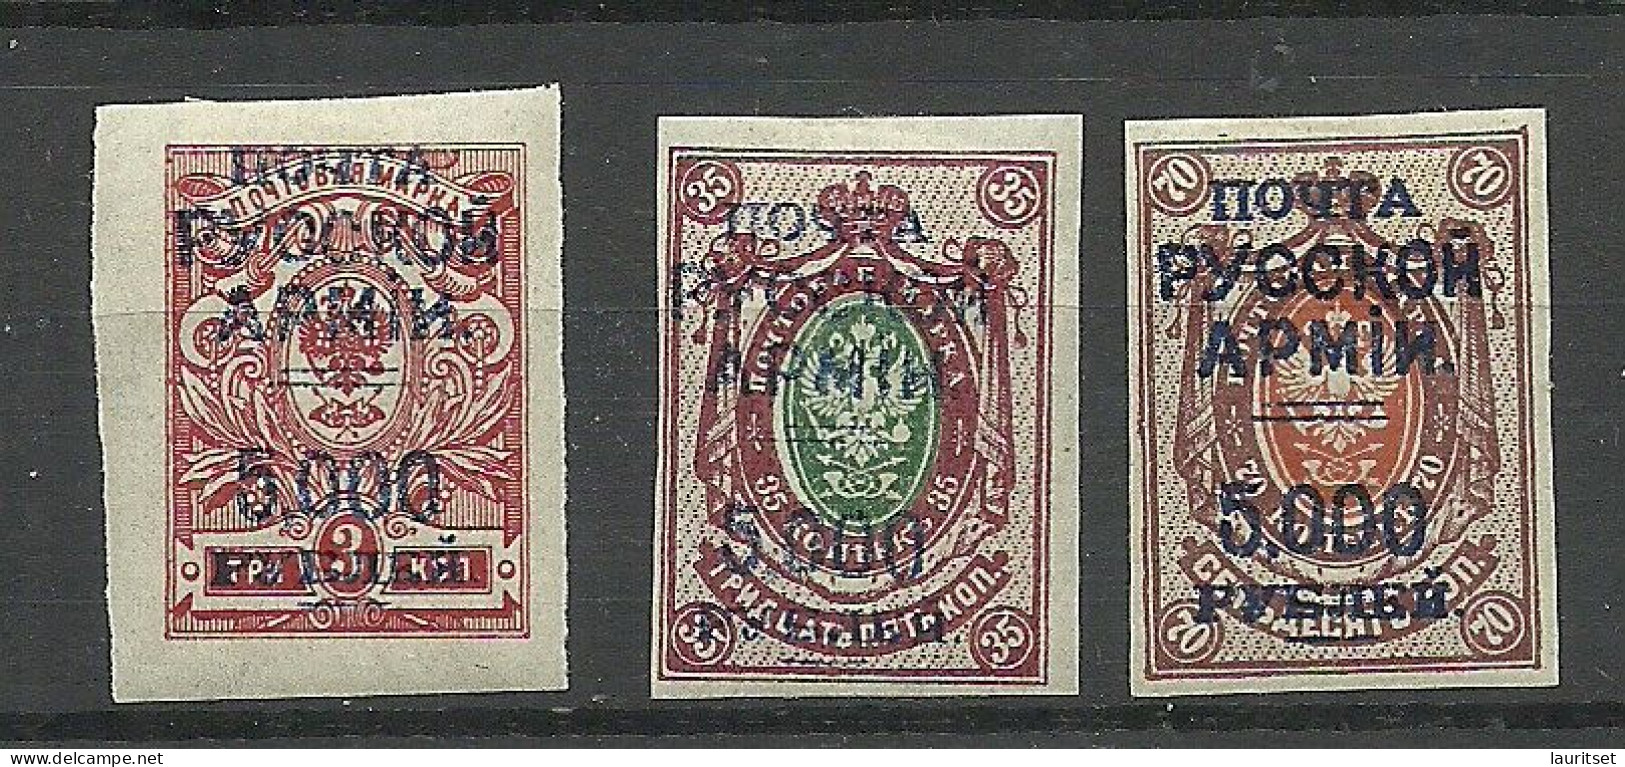 RUSSLAND RUSSIA 1920 Bürgerkrieg Wrangel Armee Lagerpost In Gallipoli, 3 Imperforated Stamps * - Wrangel-Armee